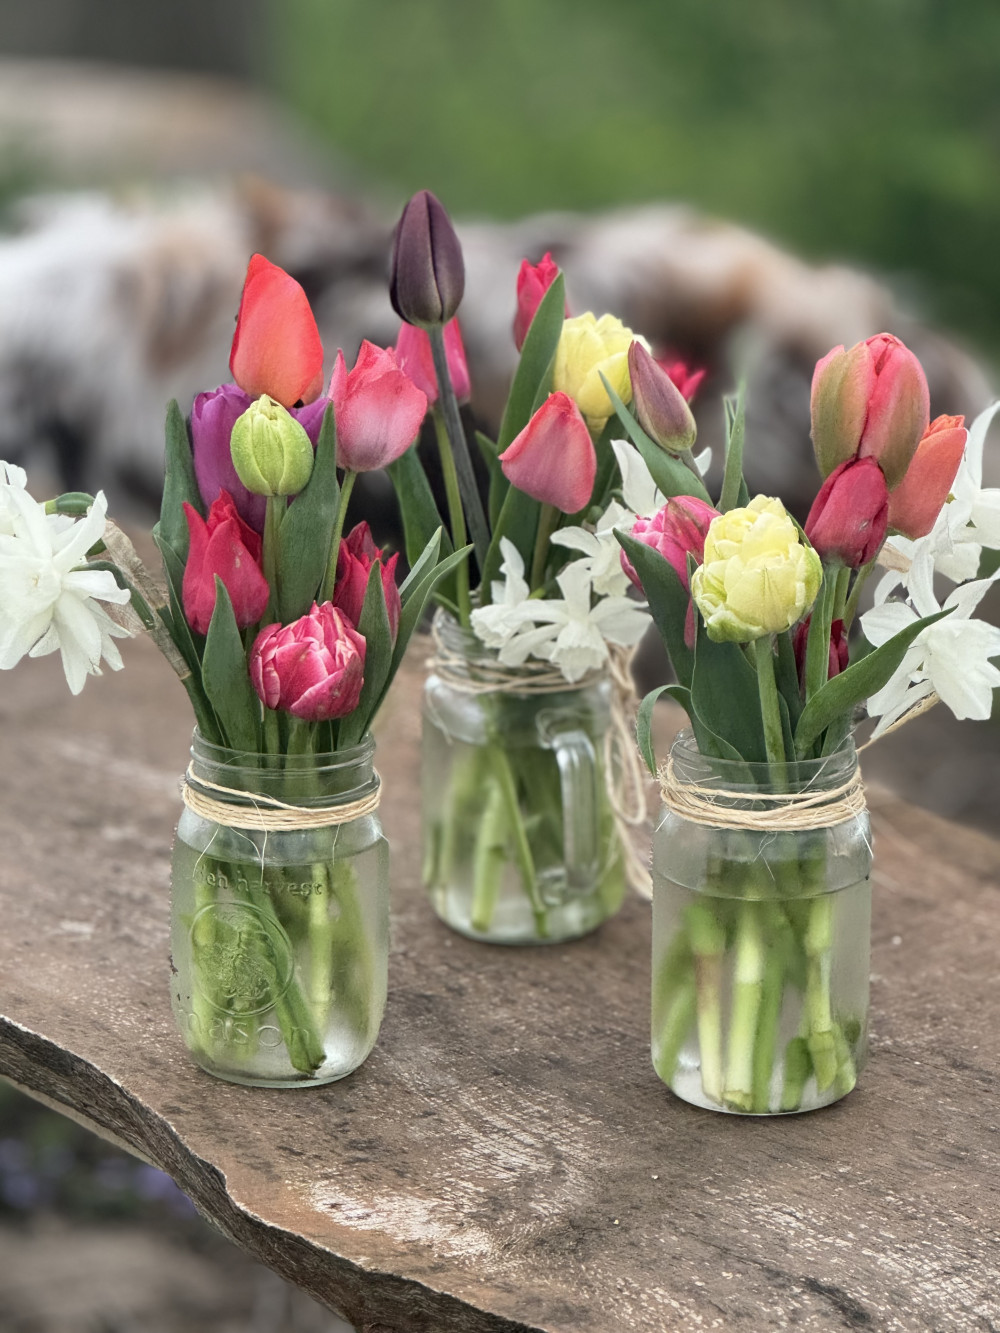 Spring tulip bouquet